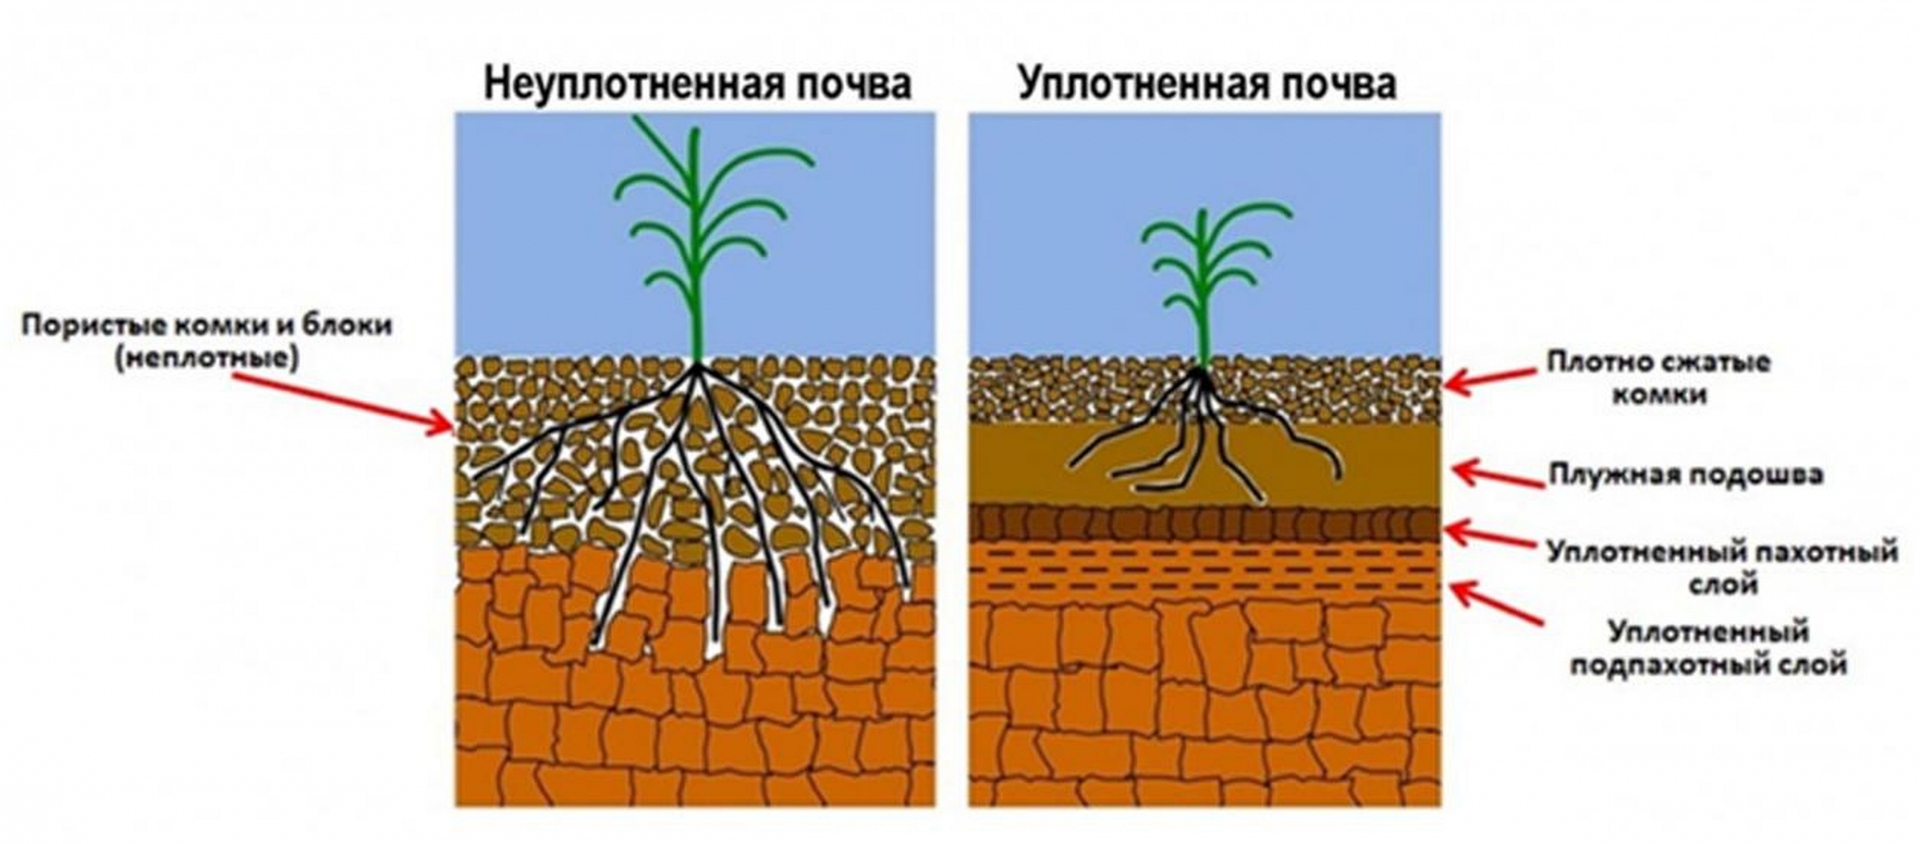 Уплотнение почвы